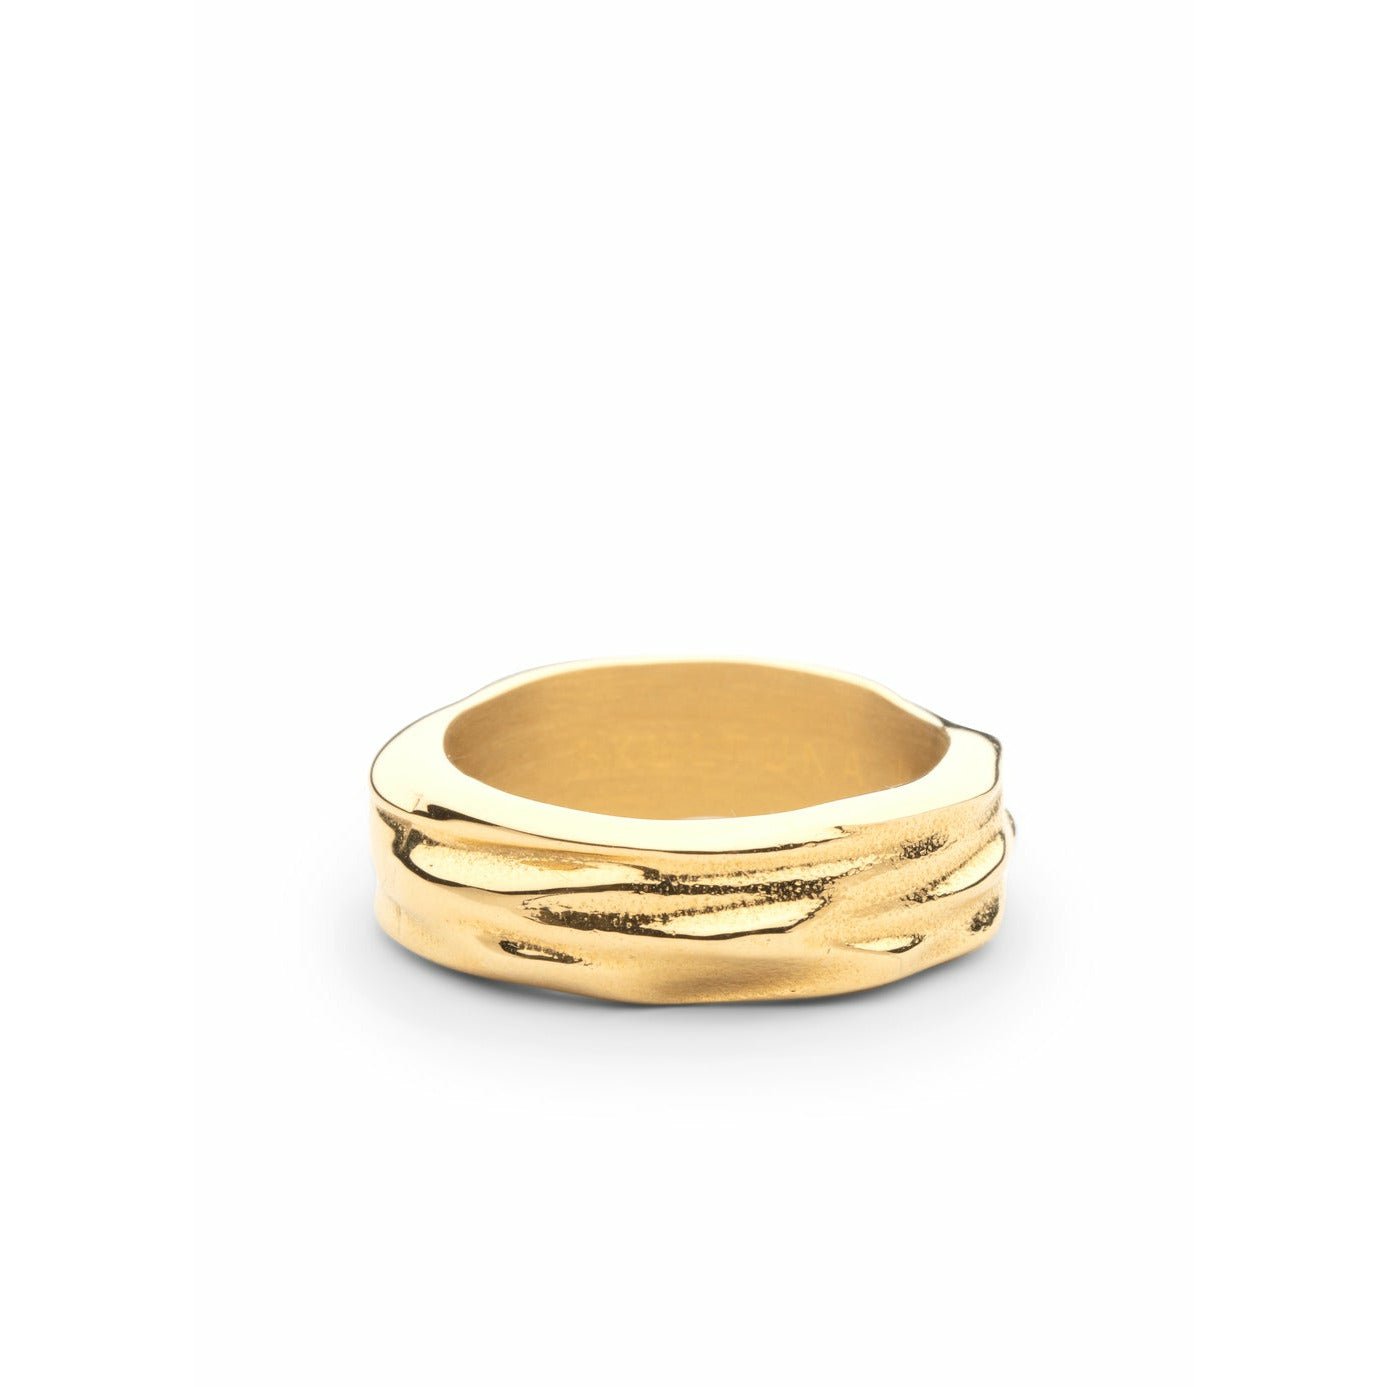 Skultuna undurchsichtige Objekte dicker Ring kleiner Matt Gold, Ø1,6 cm